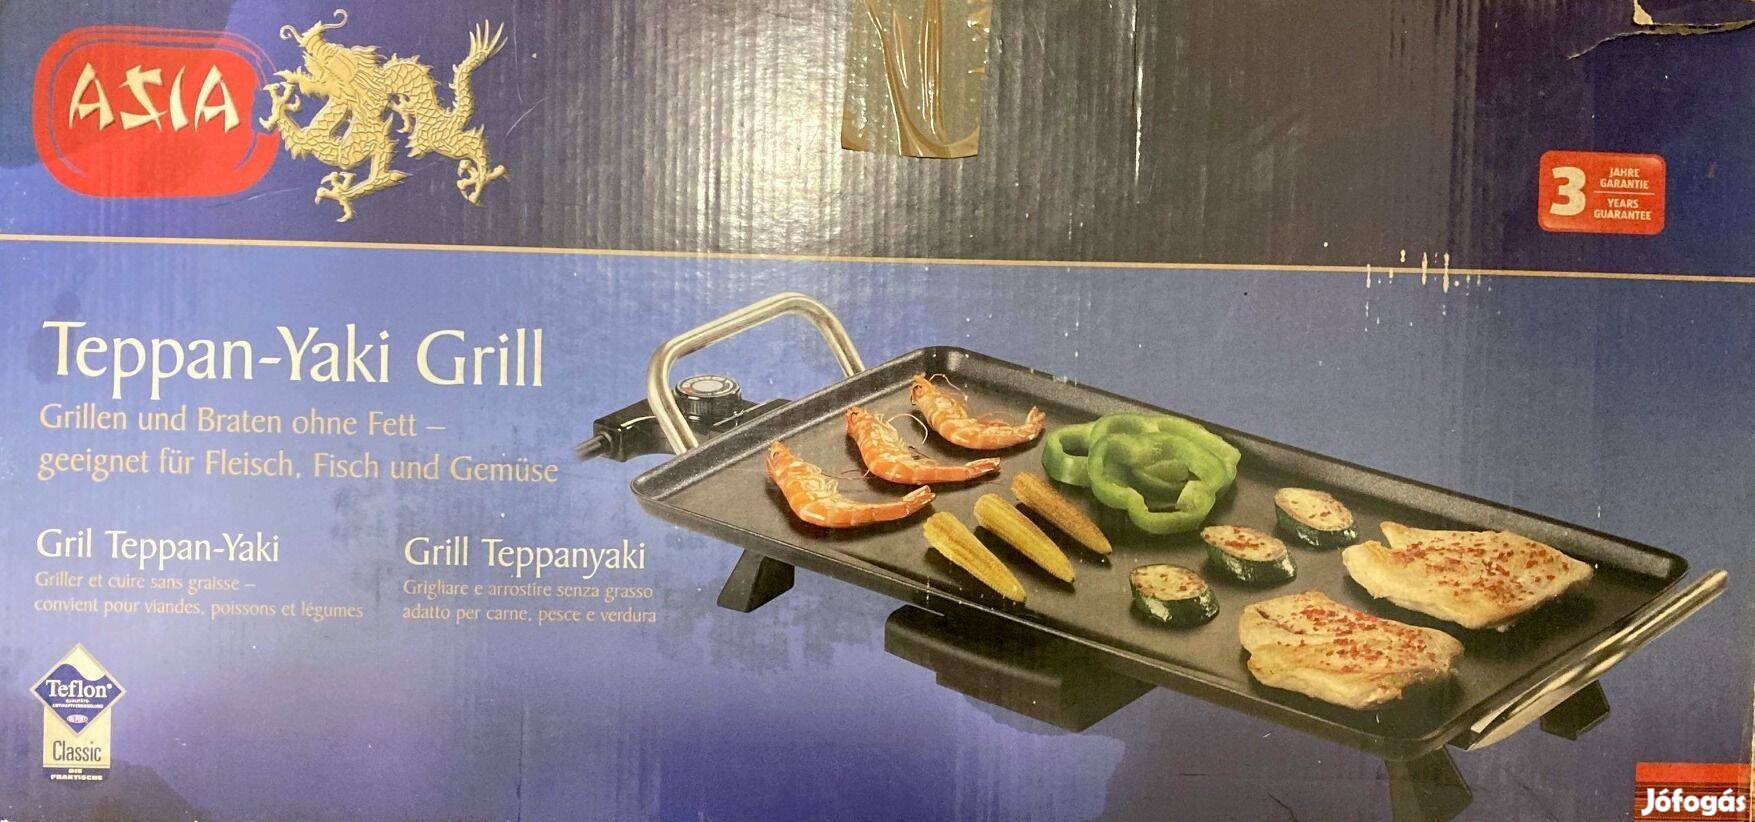 Eladó Teppan Yaki asztali grill